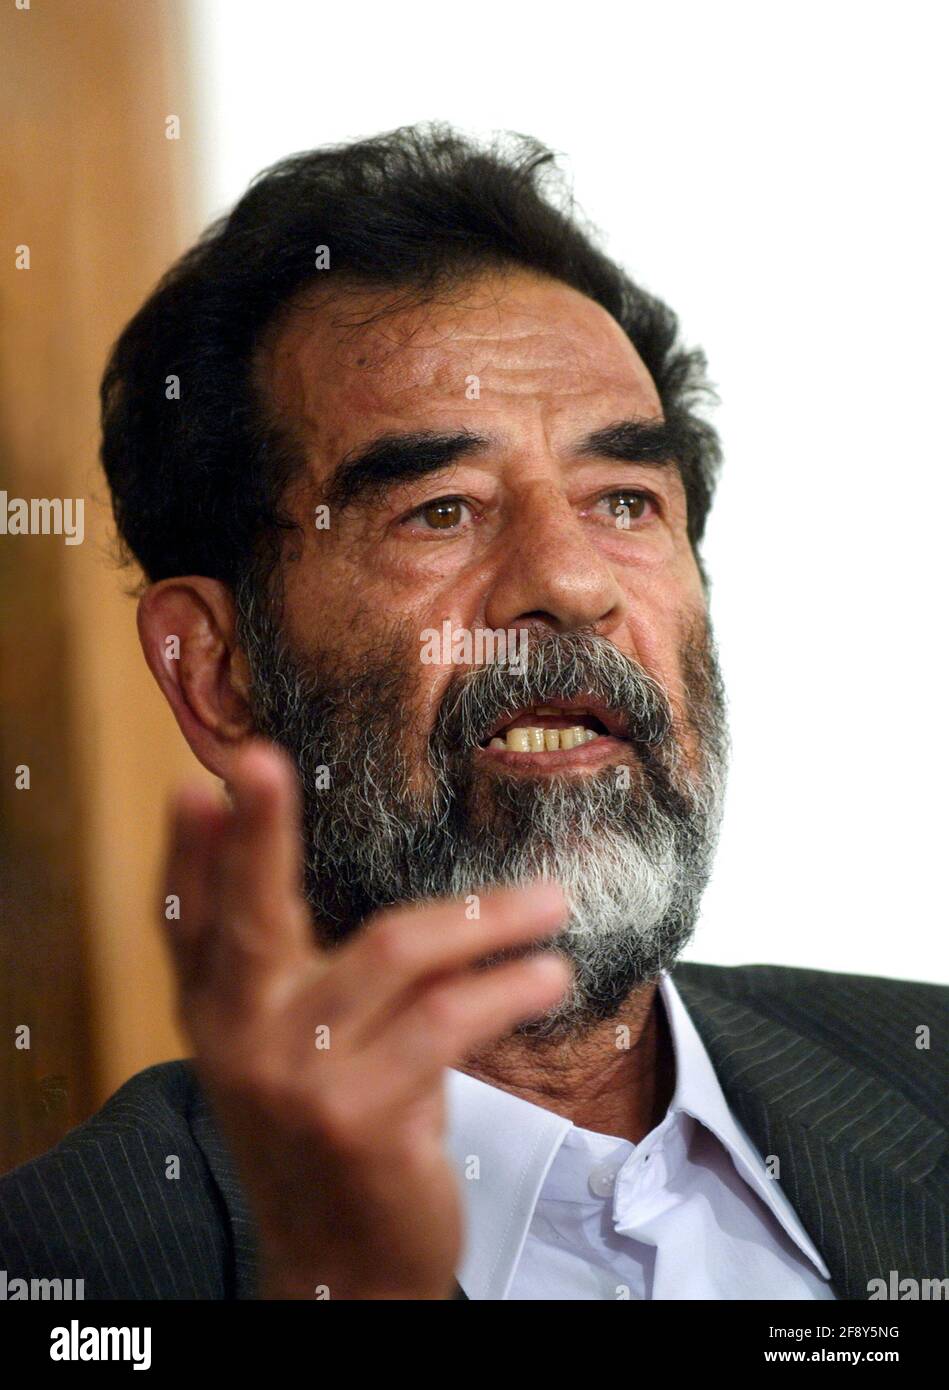 Saddam Hussein. Ritratto dell'ex presidente dell'Iraq, Saddam Hussein Abd al-Majid al-Tikriti 1937-2006). Fotografia dell'esercito AMERICANO scattata quando era davanti ad un tribunale dopo la sua cattura a Tikrit, Iraq. Foto scattata nel 2004. Foto Stock